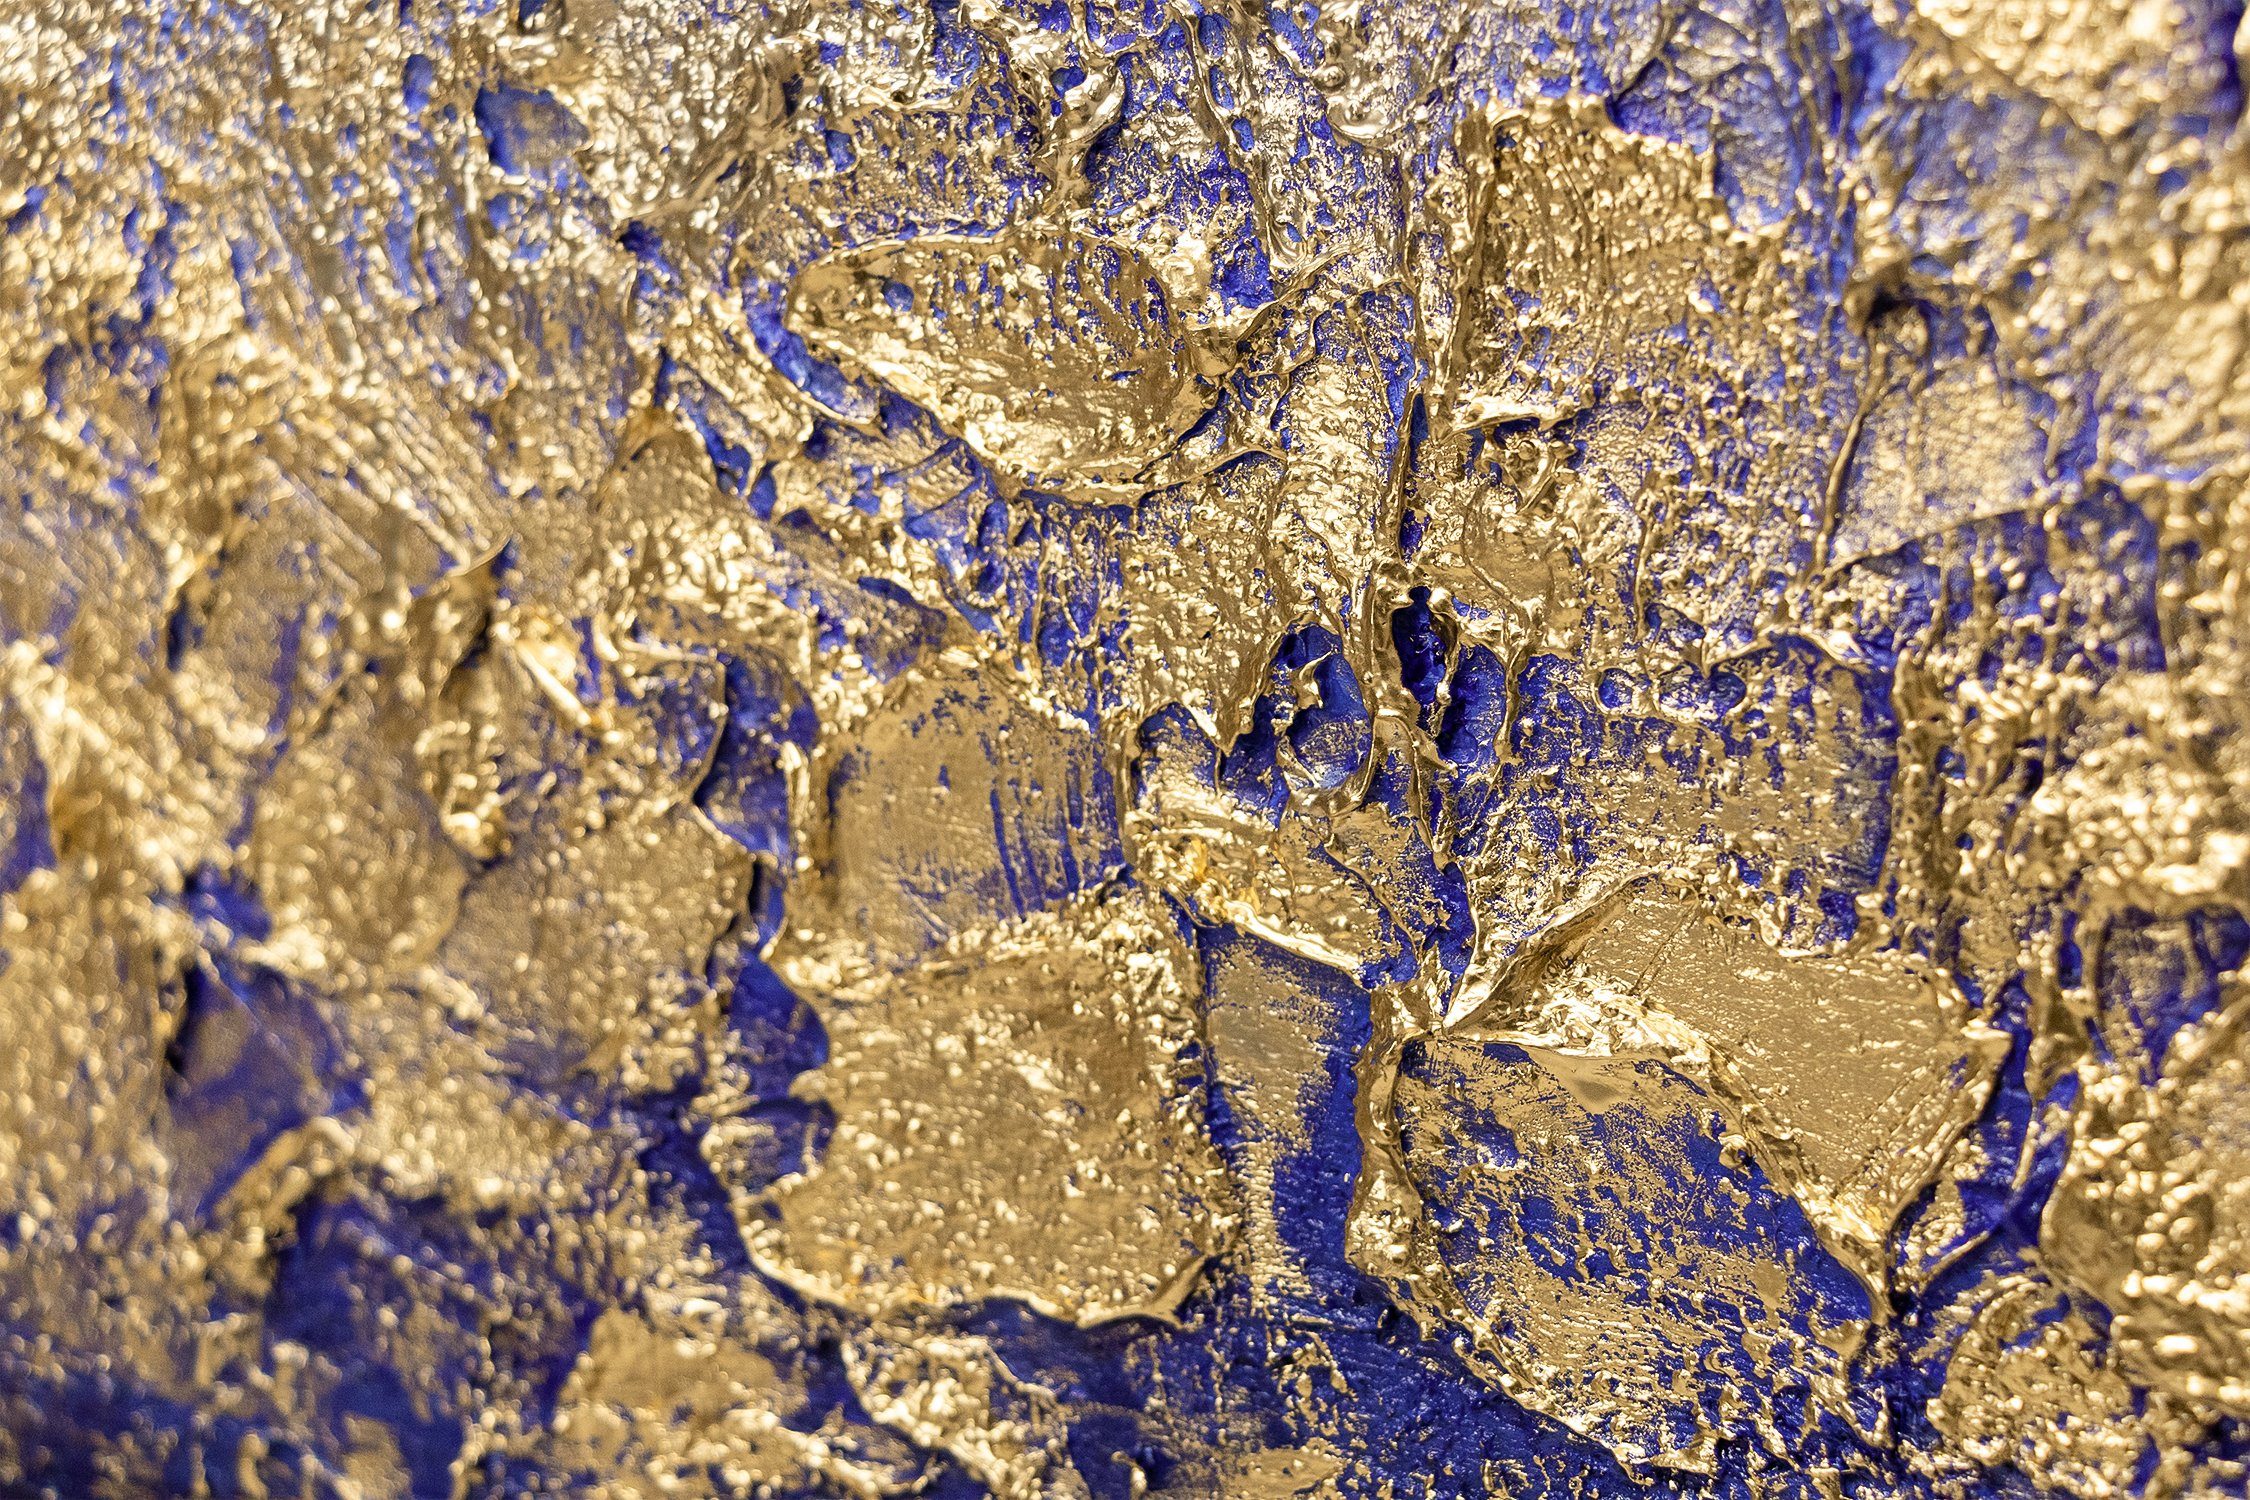 YS-Art Gemälde Seelichter, Abstraktion, auf Leinwand Meer Regenbogen Gold Abstraktes Handgemalt Bild